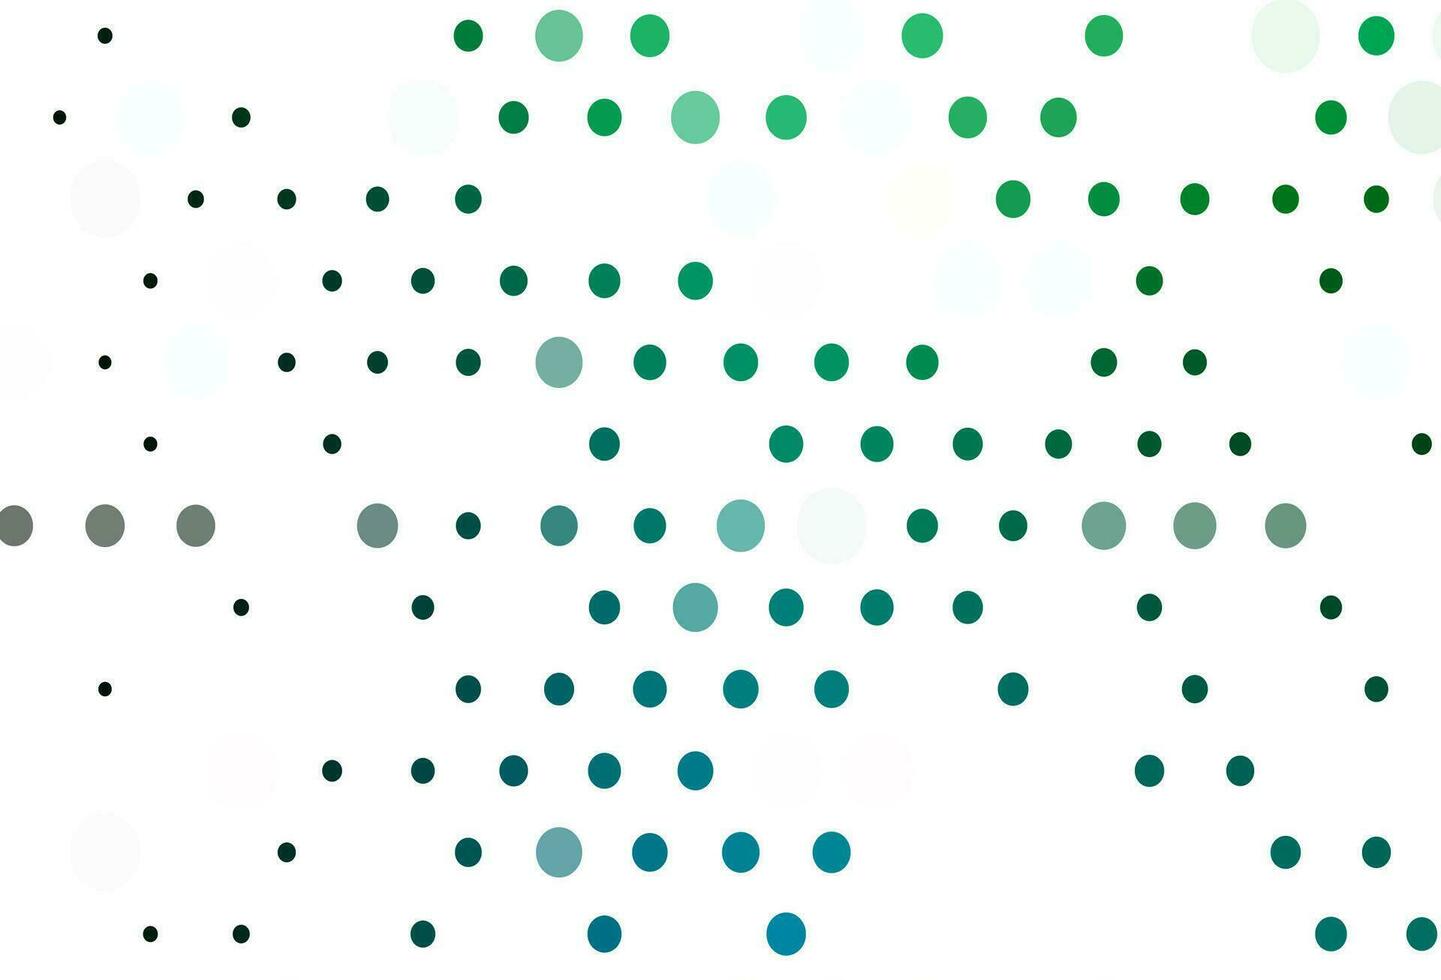 modelo de vetor azul e verde claro com círculos.